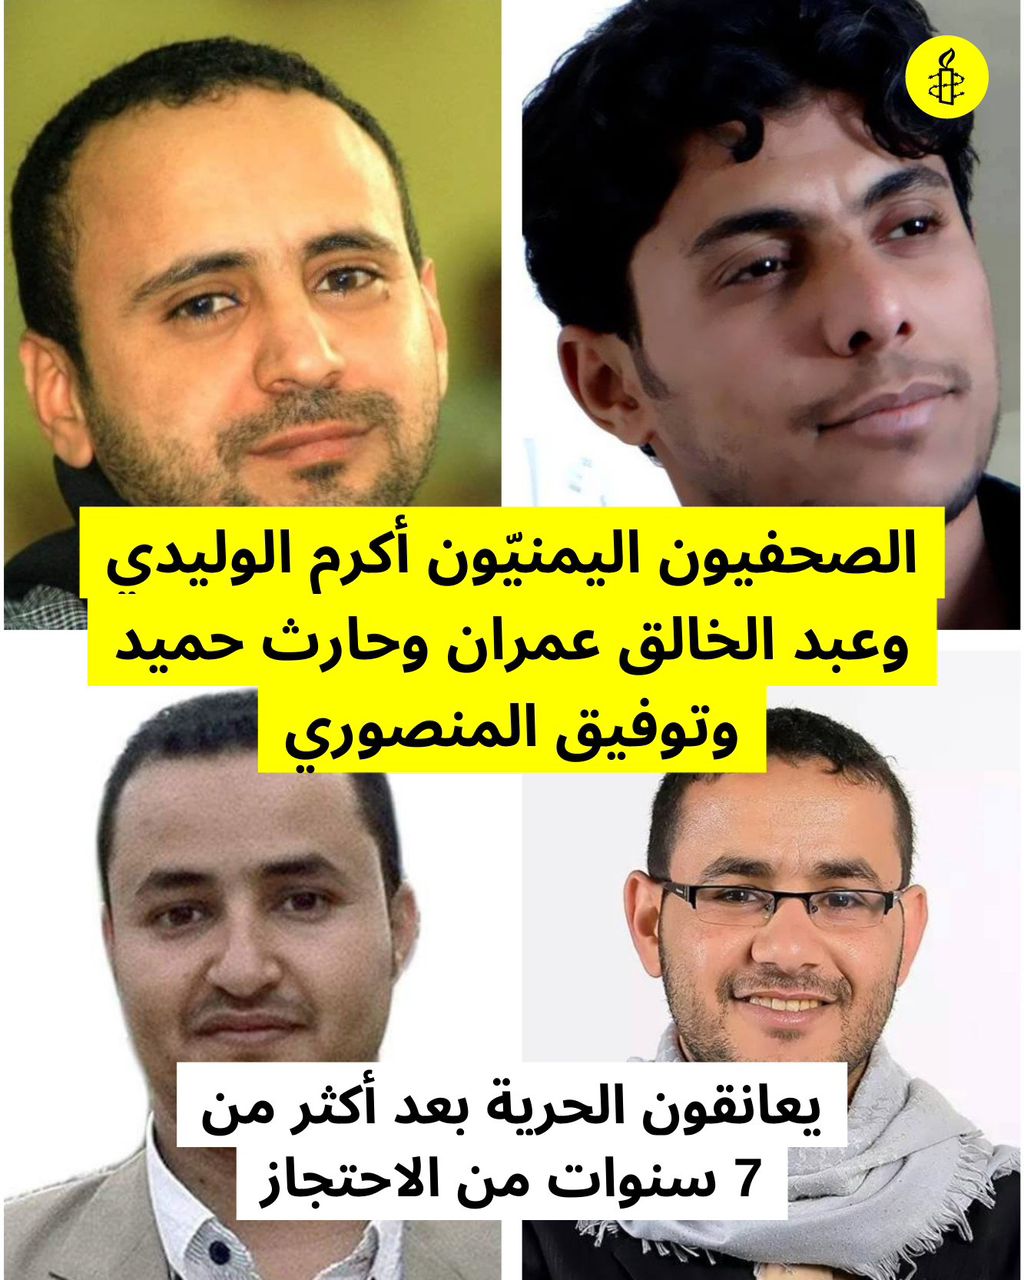 العفو الدولية ترحب بالإفراج عن الصحفيين الأربعة وتؤكد أنه ما كان ينبغي احتجازهم 